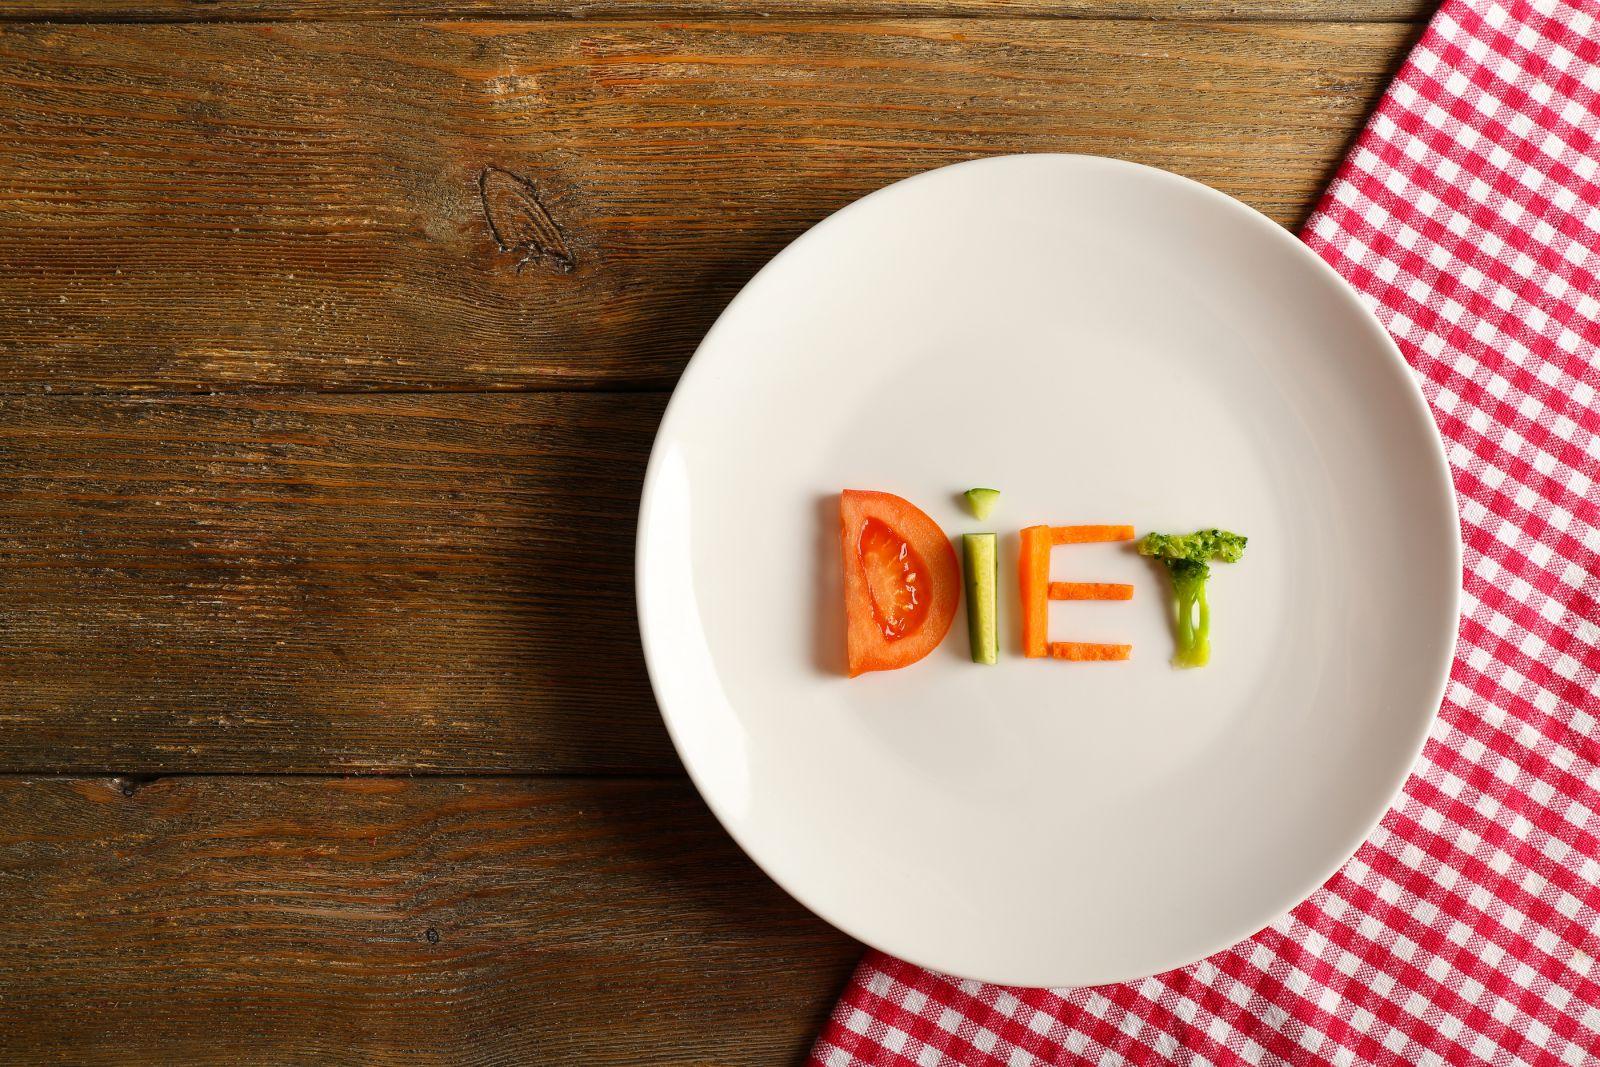 Найдена диета, которая действительно сжигает опасный жир: МРТ подтвердила